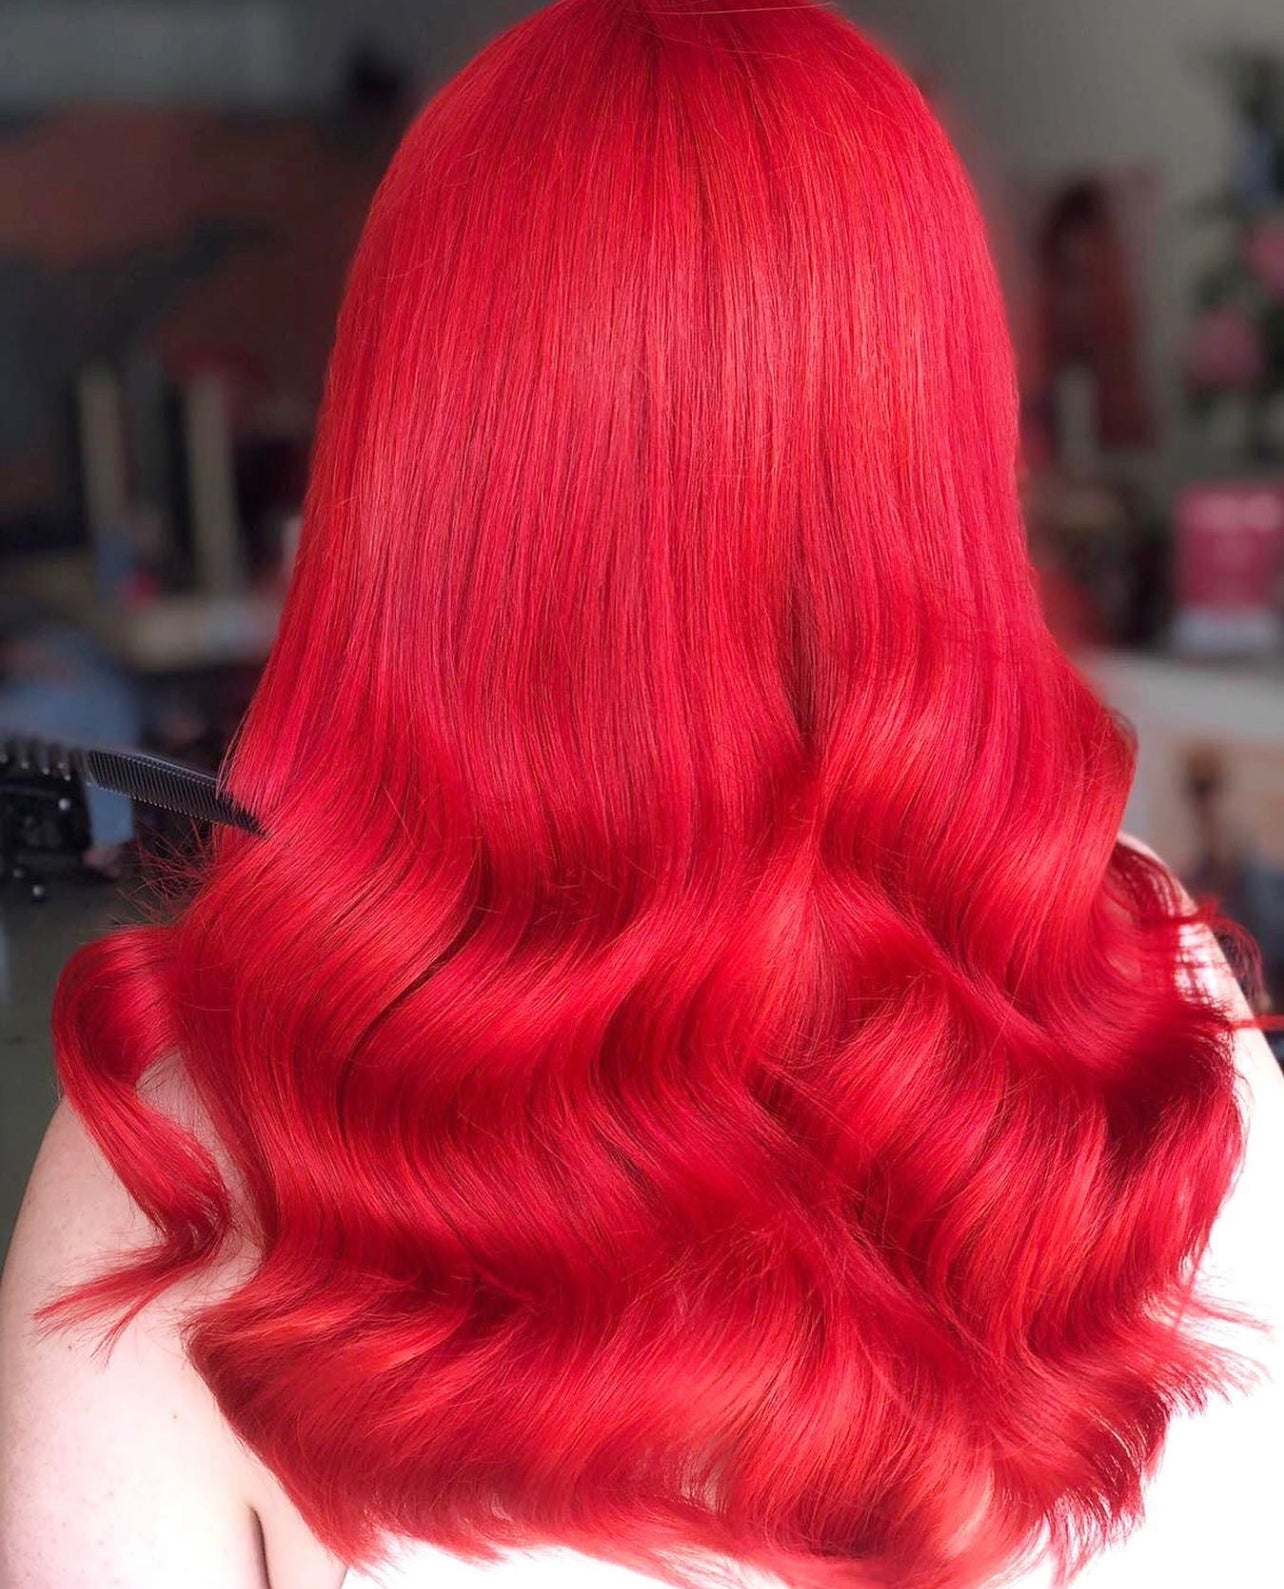 Fire Red Hair Color | Lange haare ideen, Haare rot färben, Haare färben  ideen